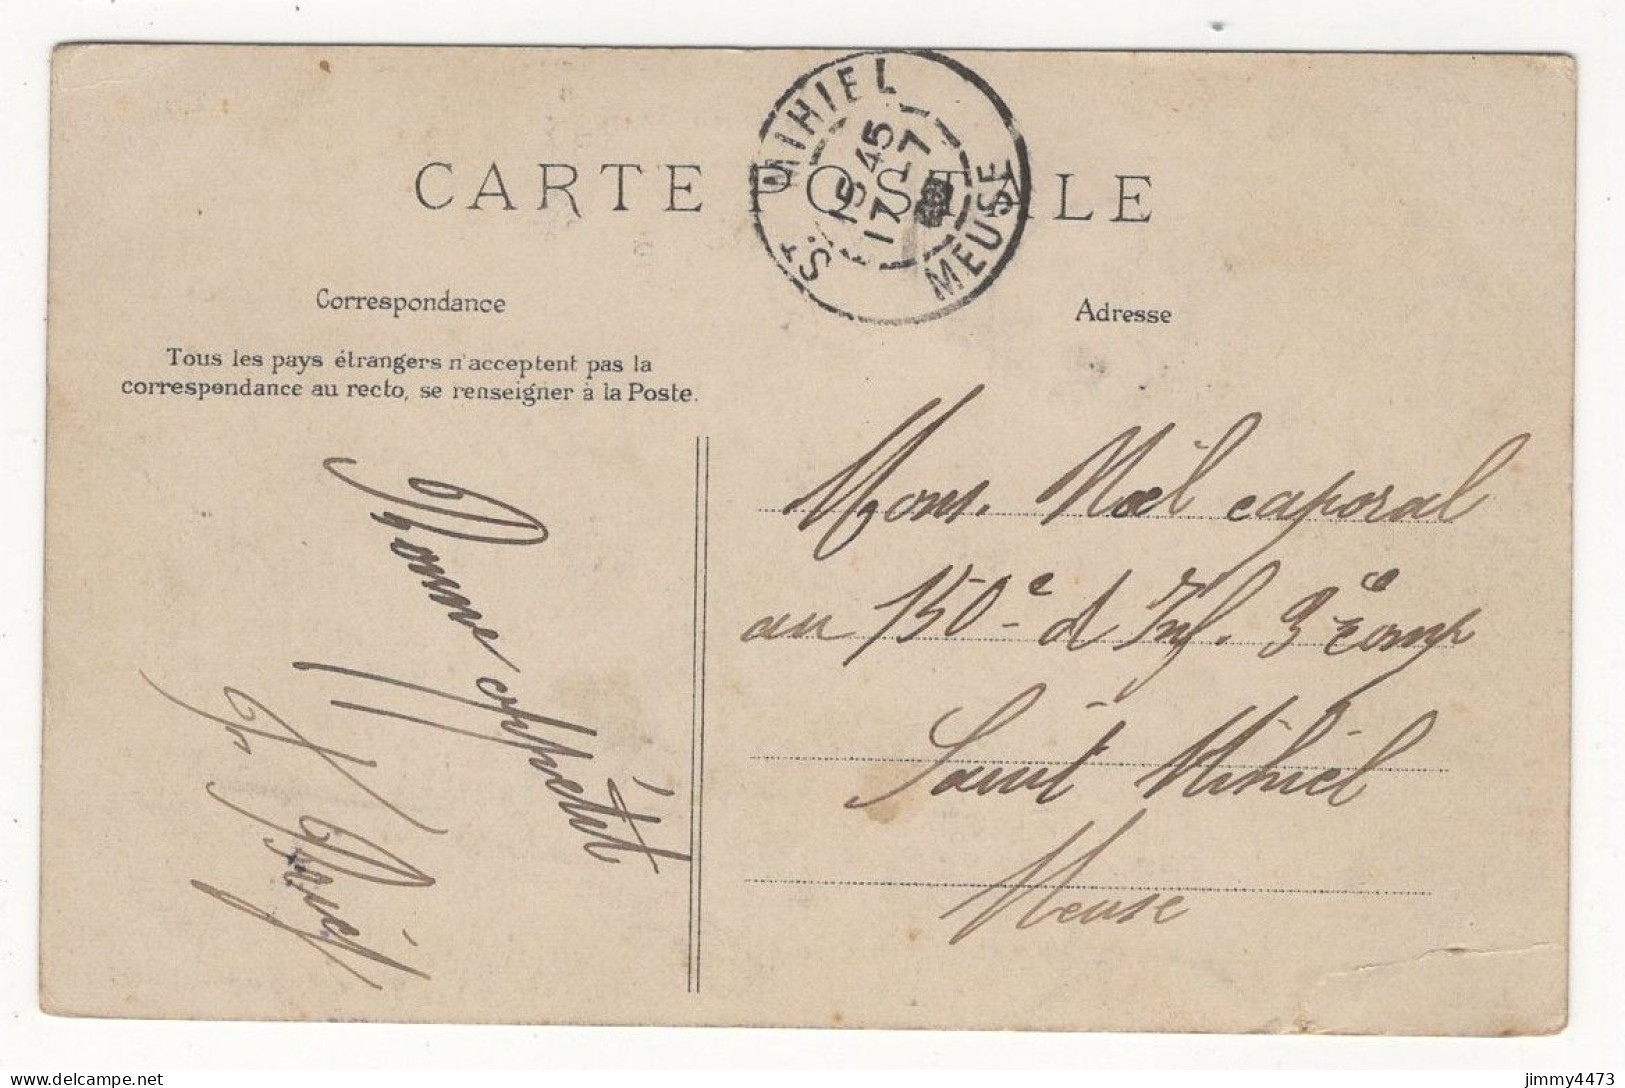 CPA - LE HAVRE En 1906 - Banque De France Et Rue Thiers ( Bien Animée ) Edit. E. Le Deley  N° 10 - Graville